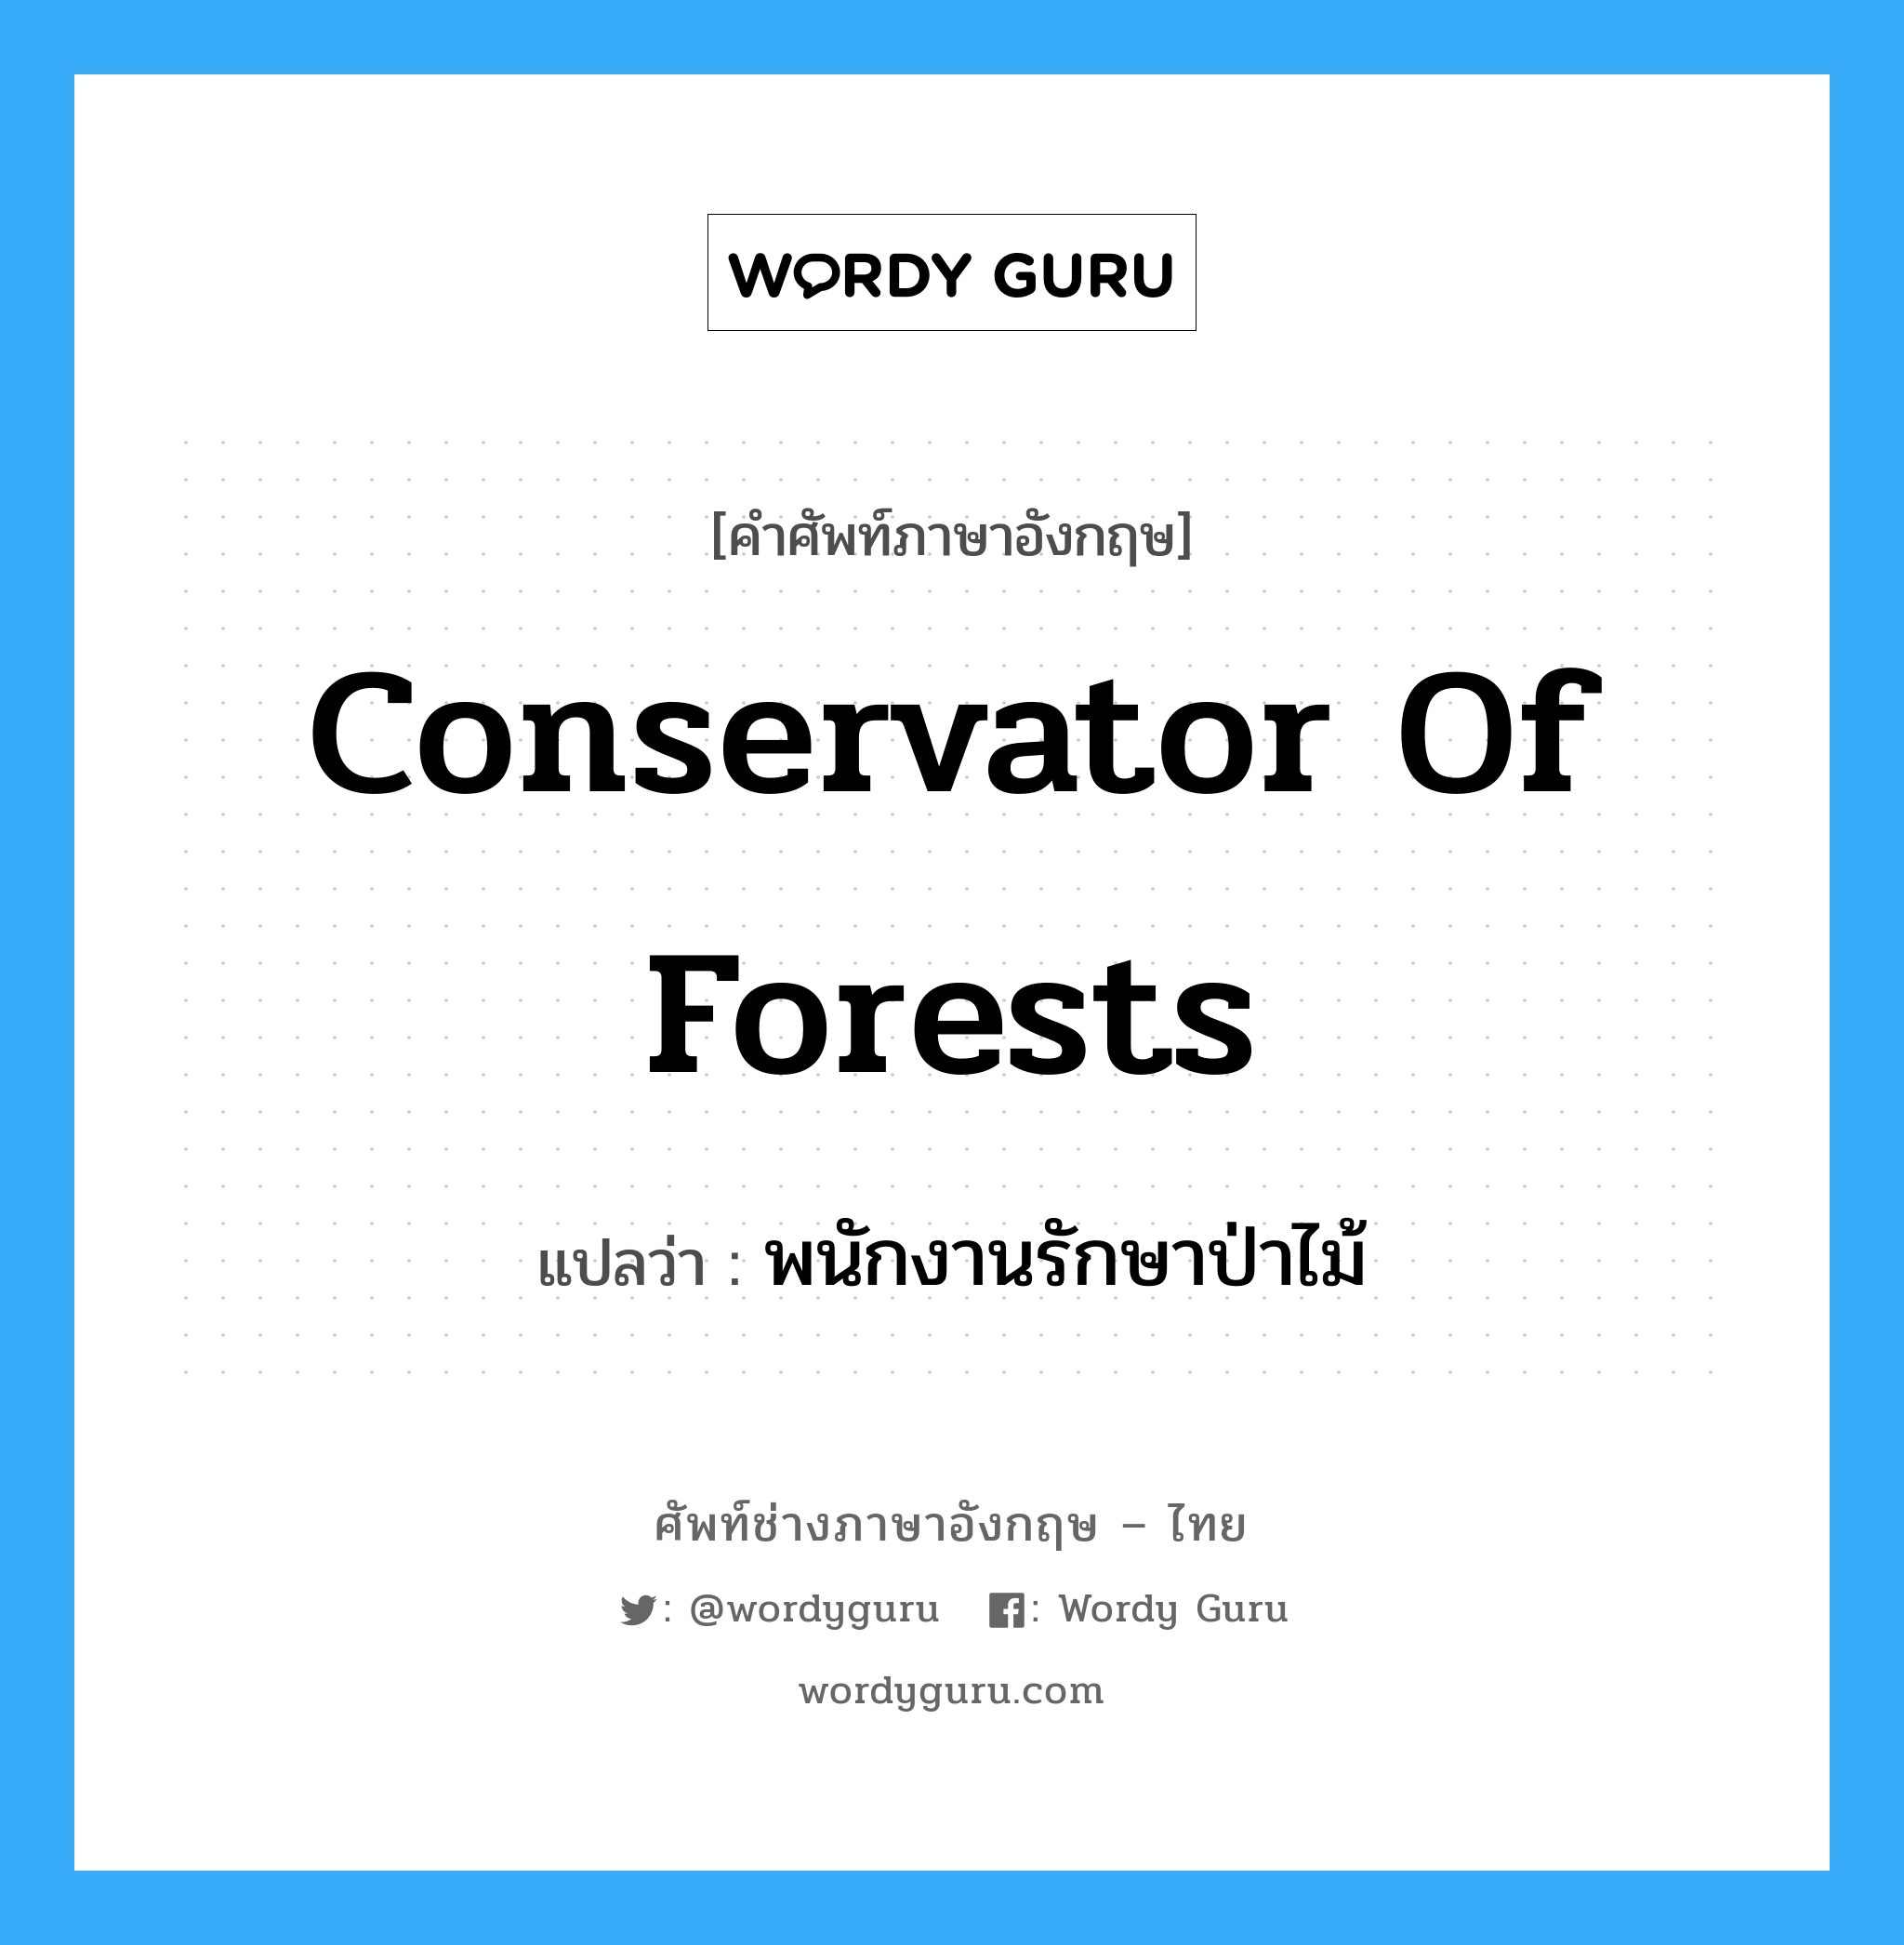 พนักงานรักษาป่าไม้ ภาษาอังกฤษ?, คำศัพท์ช่างภาษาอังกฤษ - ไทย พนักงานรักษาป่าไม้ คำศัพท์ภาษาอังกฤษ พนักงานรักษาป่าไม้ แปลว่า conservator of forests